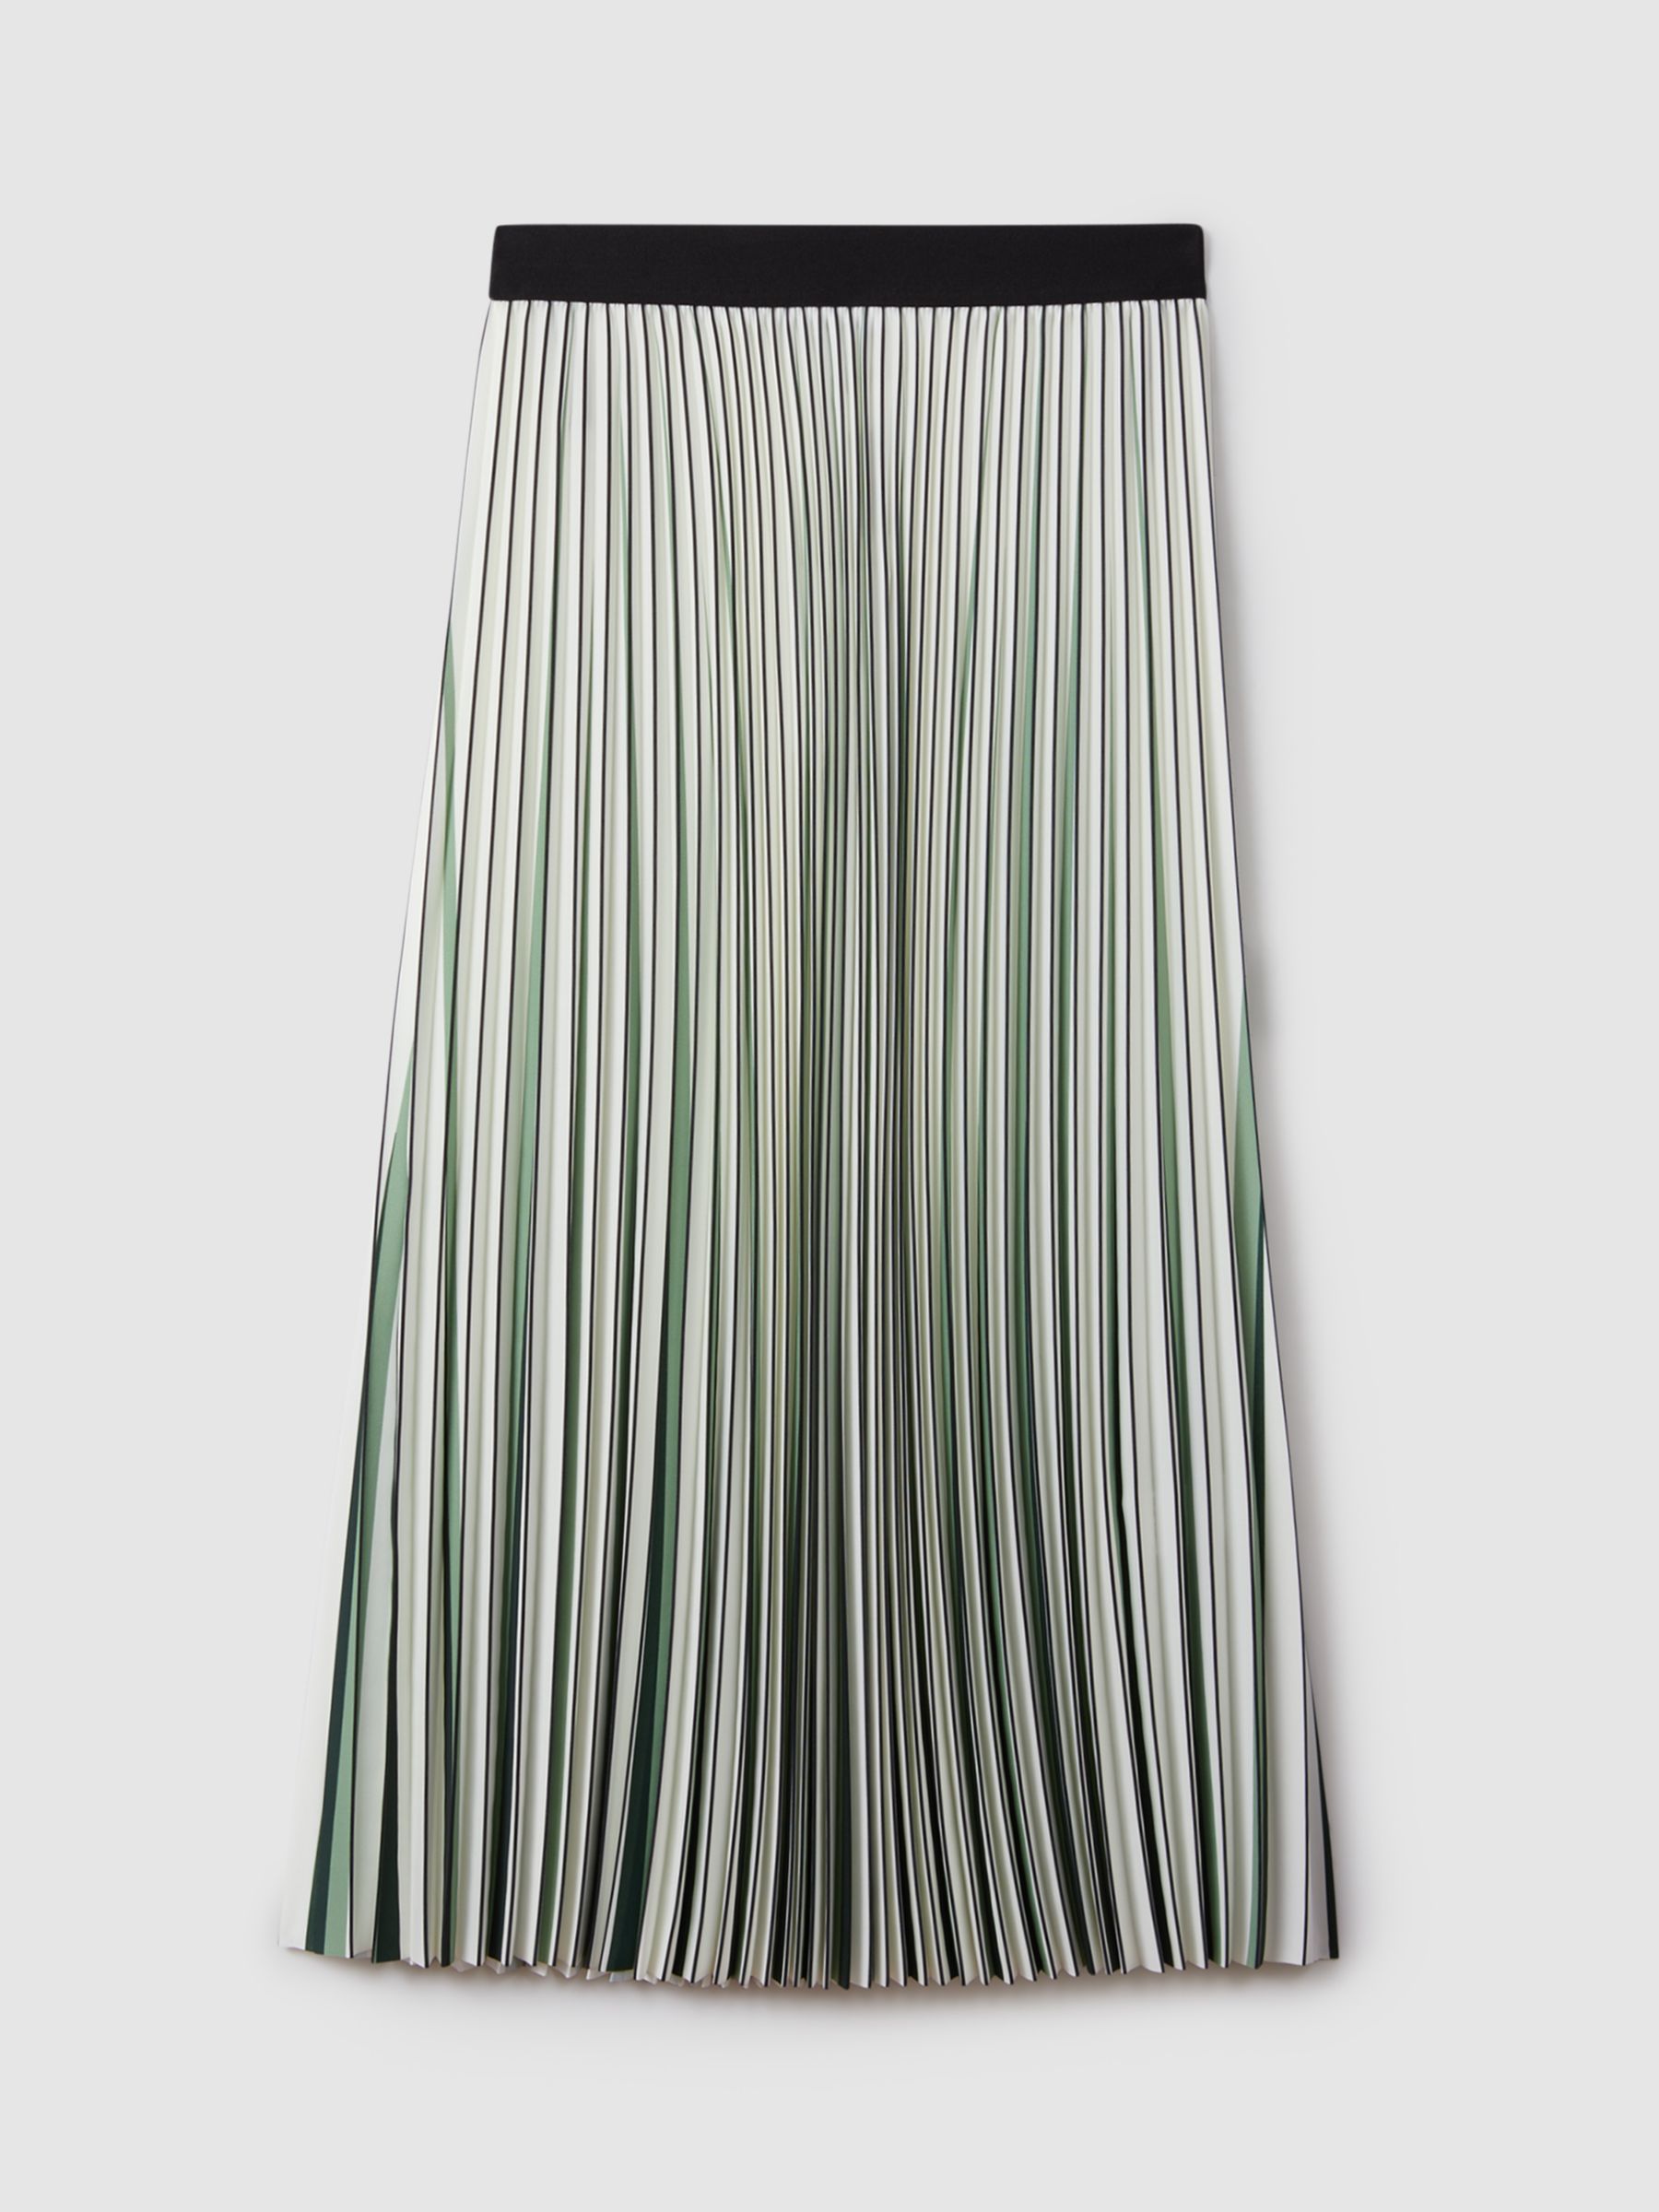 Reiss Saige Striped Pleated Midi Skirt, Cream/Multi, 16